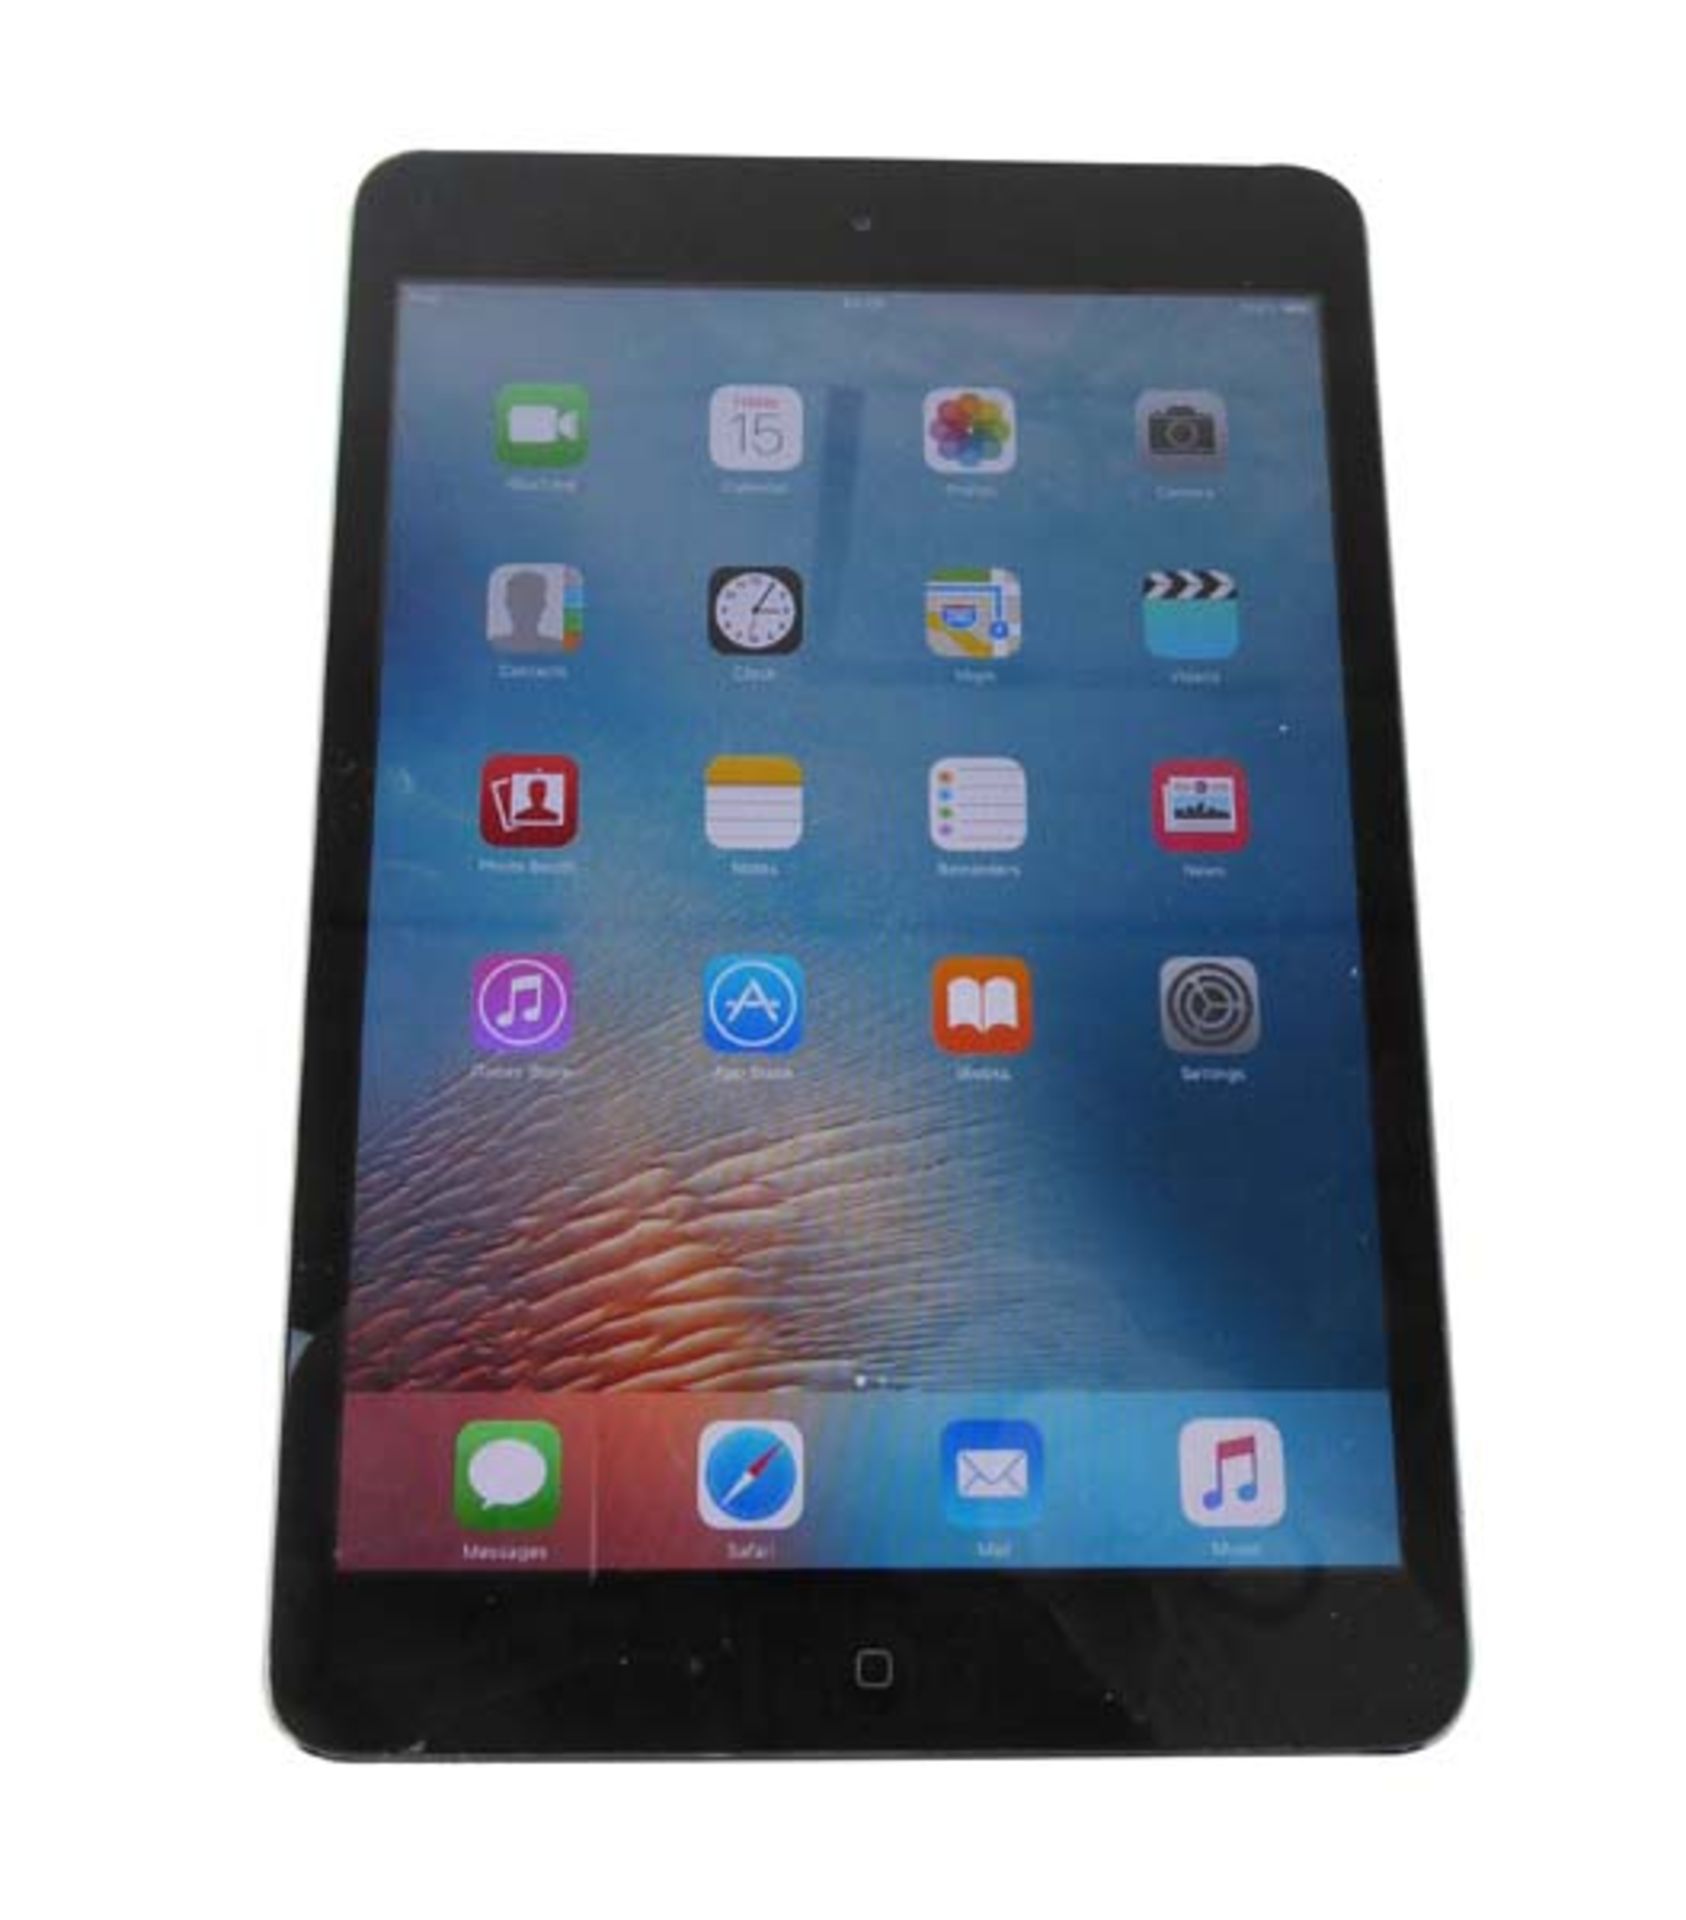 iPad Mini 32GB Black tablet with box (A1432 2012)